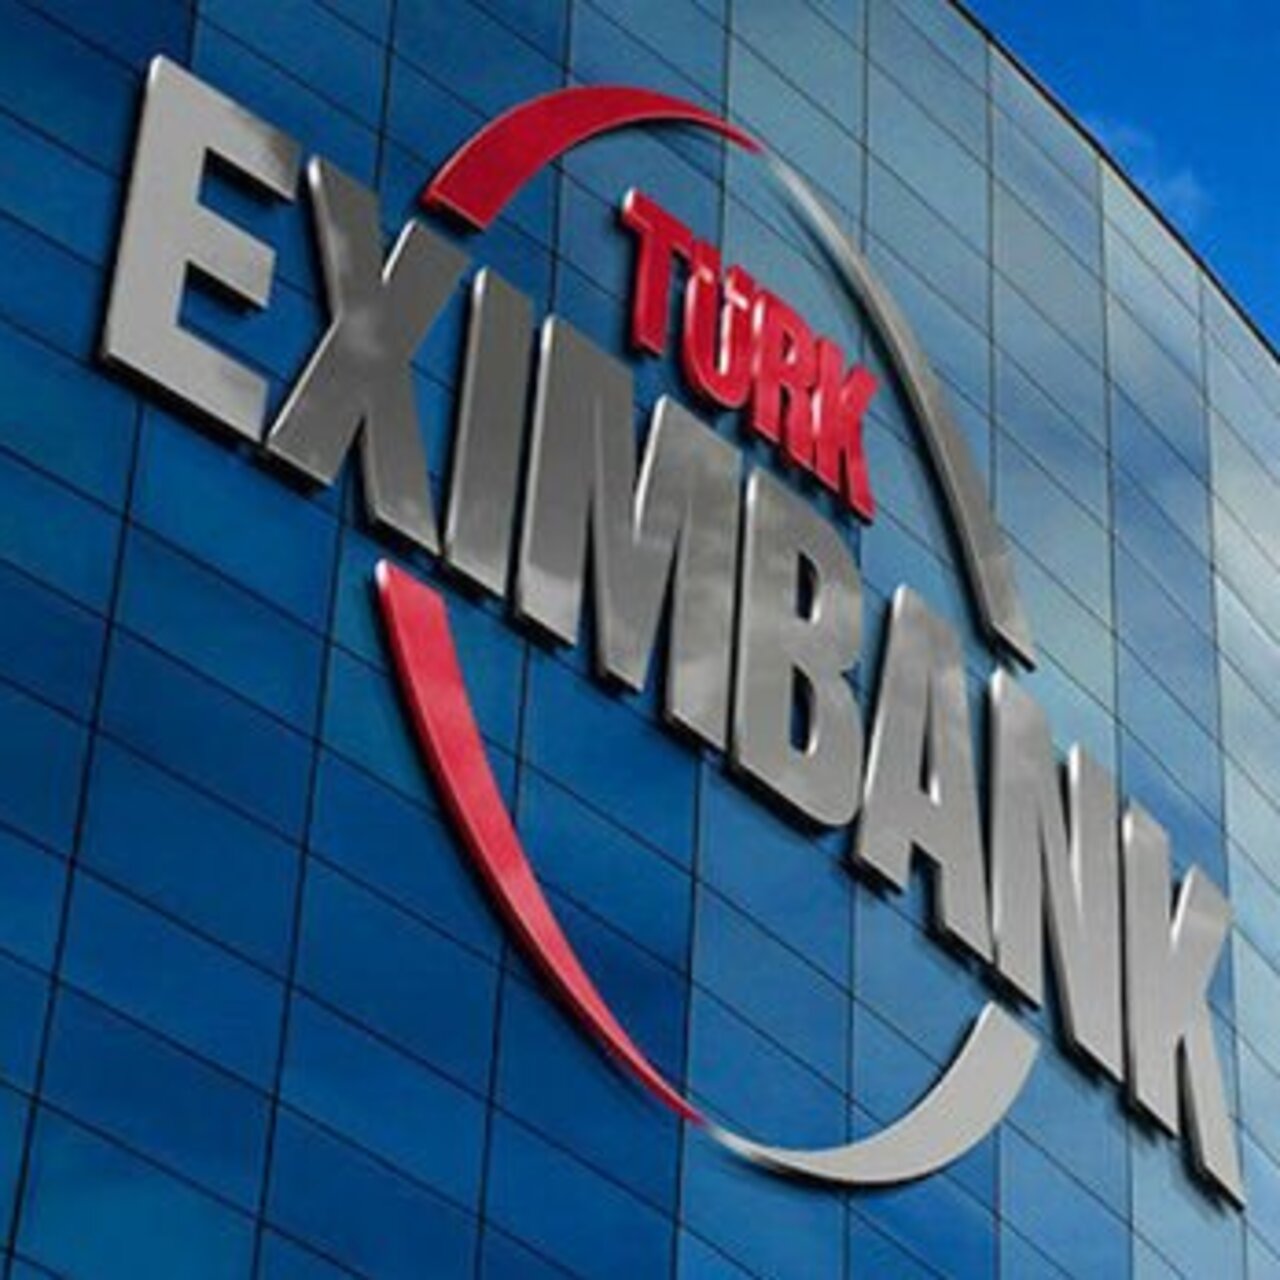 Türk Eximbank'tan 140 milyon Euro'luk kredi anlaşması